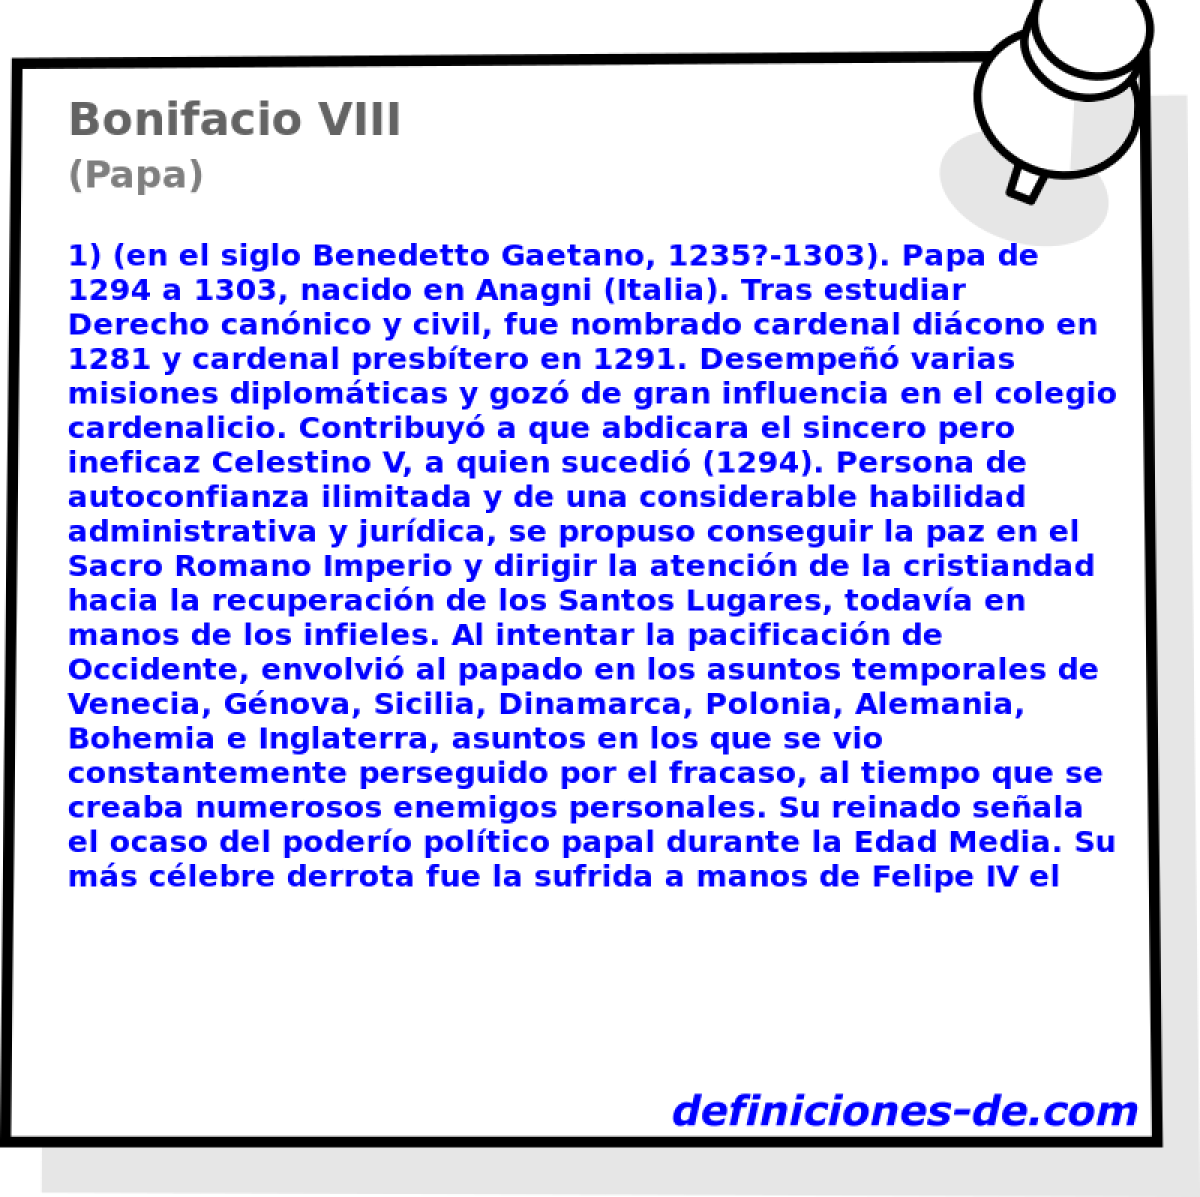 Bonifacio VIII (Papa)